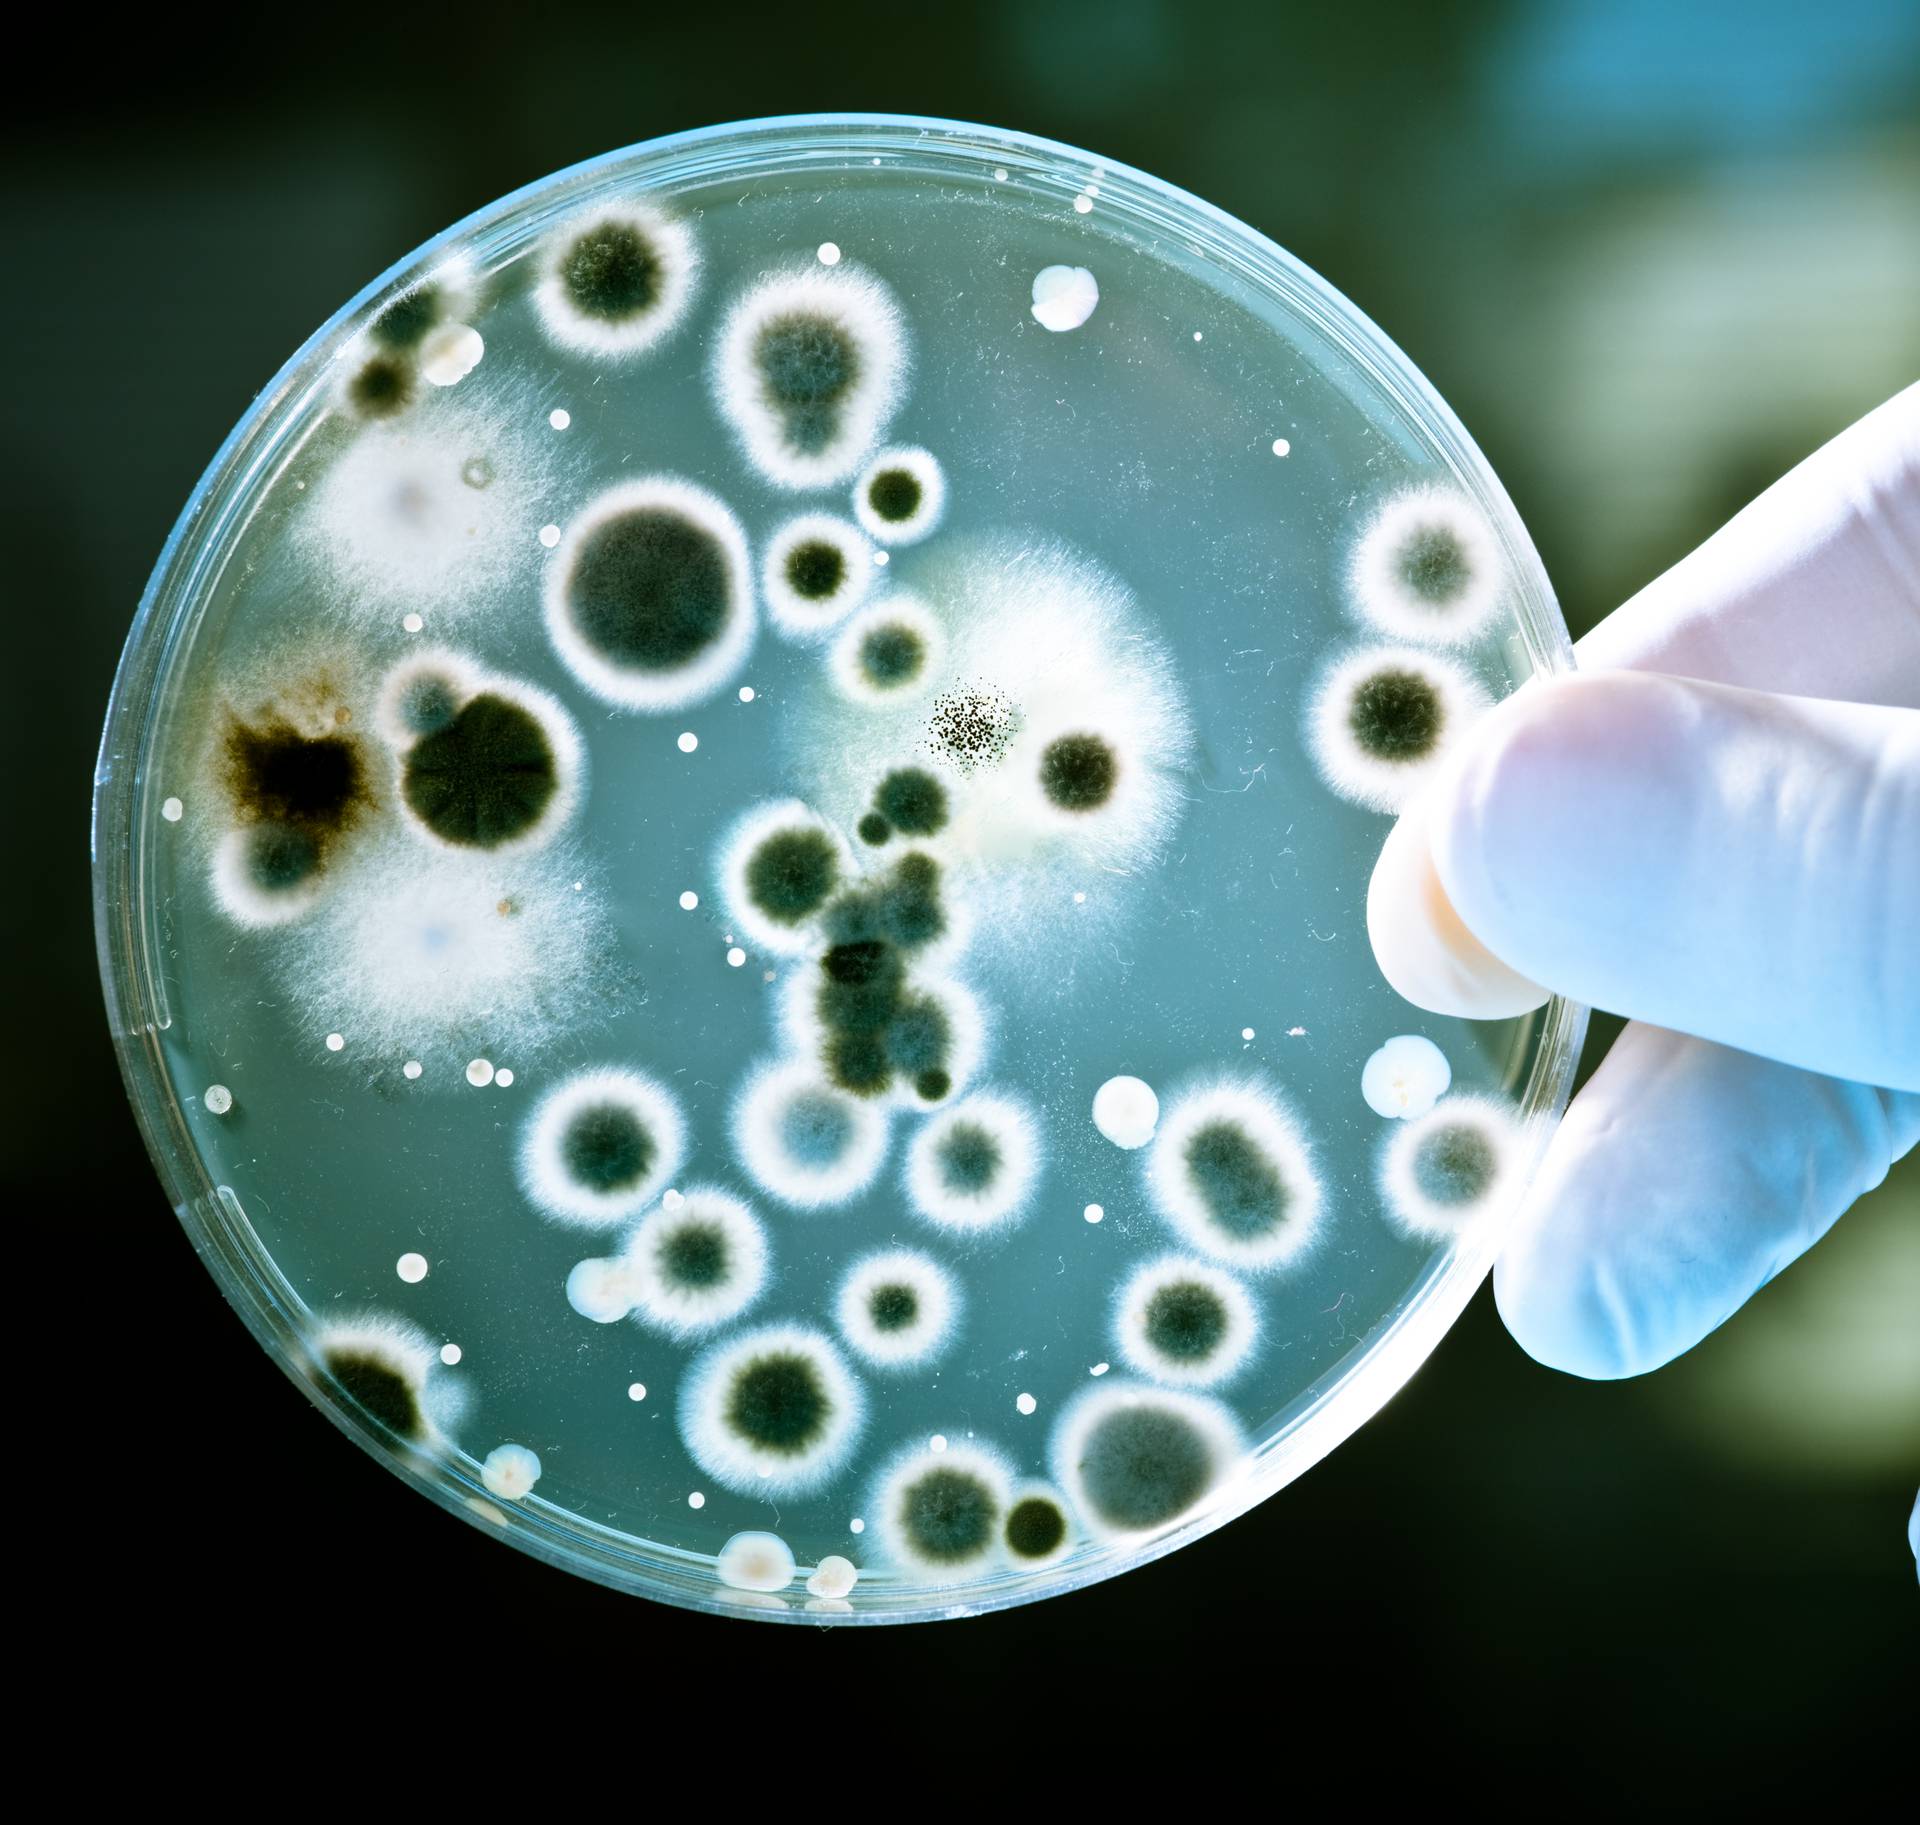 Što je to što nas čini ljudima? "Više smo mikrobi nego ljudi"